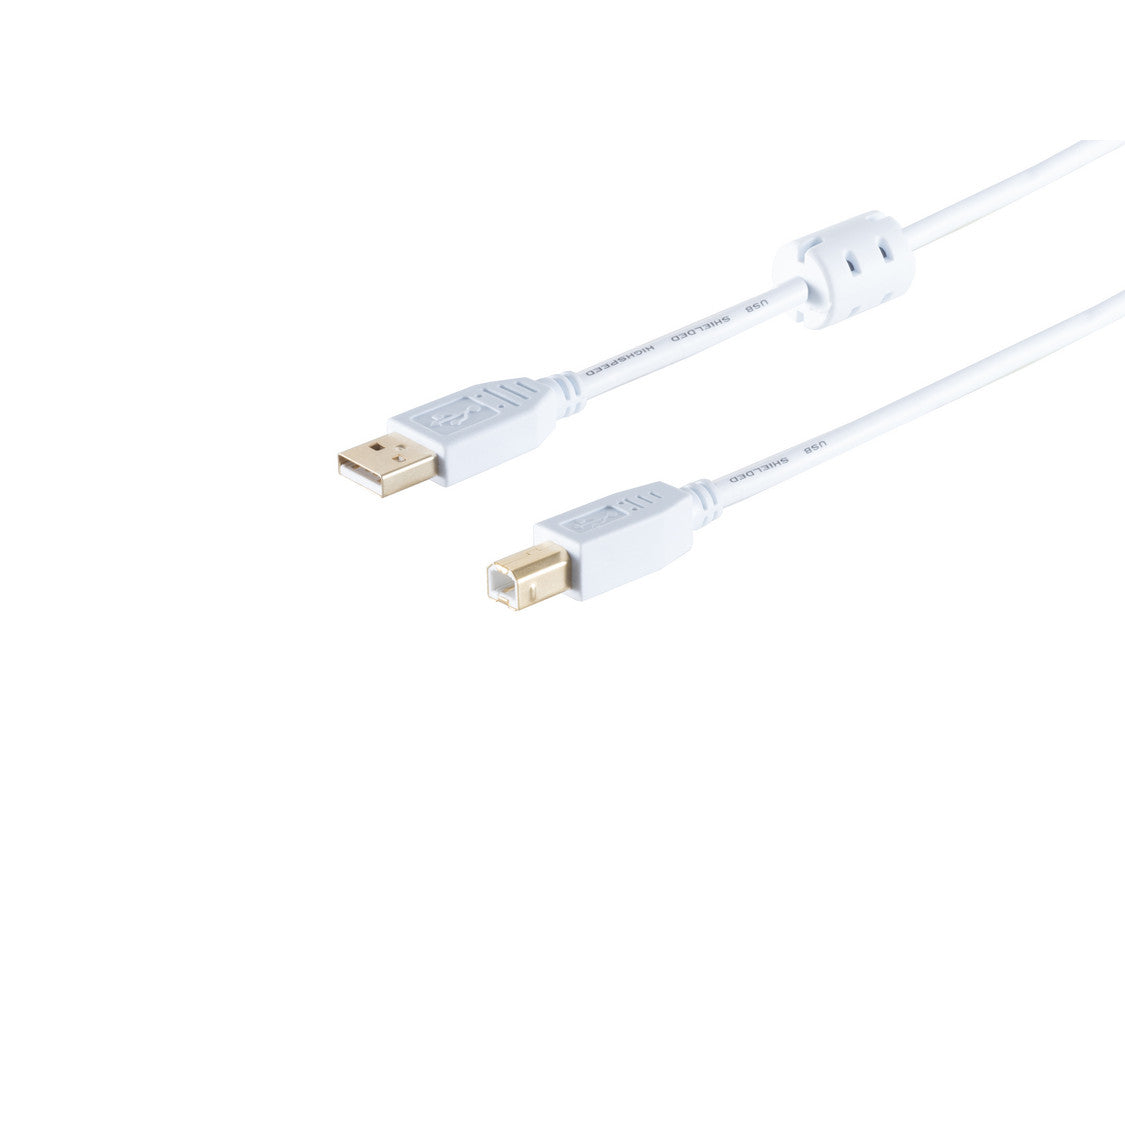 USB Kabel, Typ A Stecker mit Ferrit auf Typ B Stecker, HIGH SPEED, vergoldete Kontakte, USB 2.0